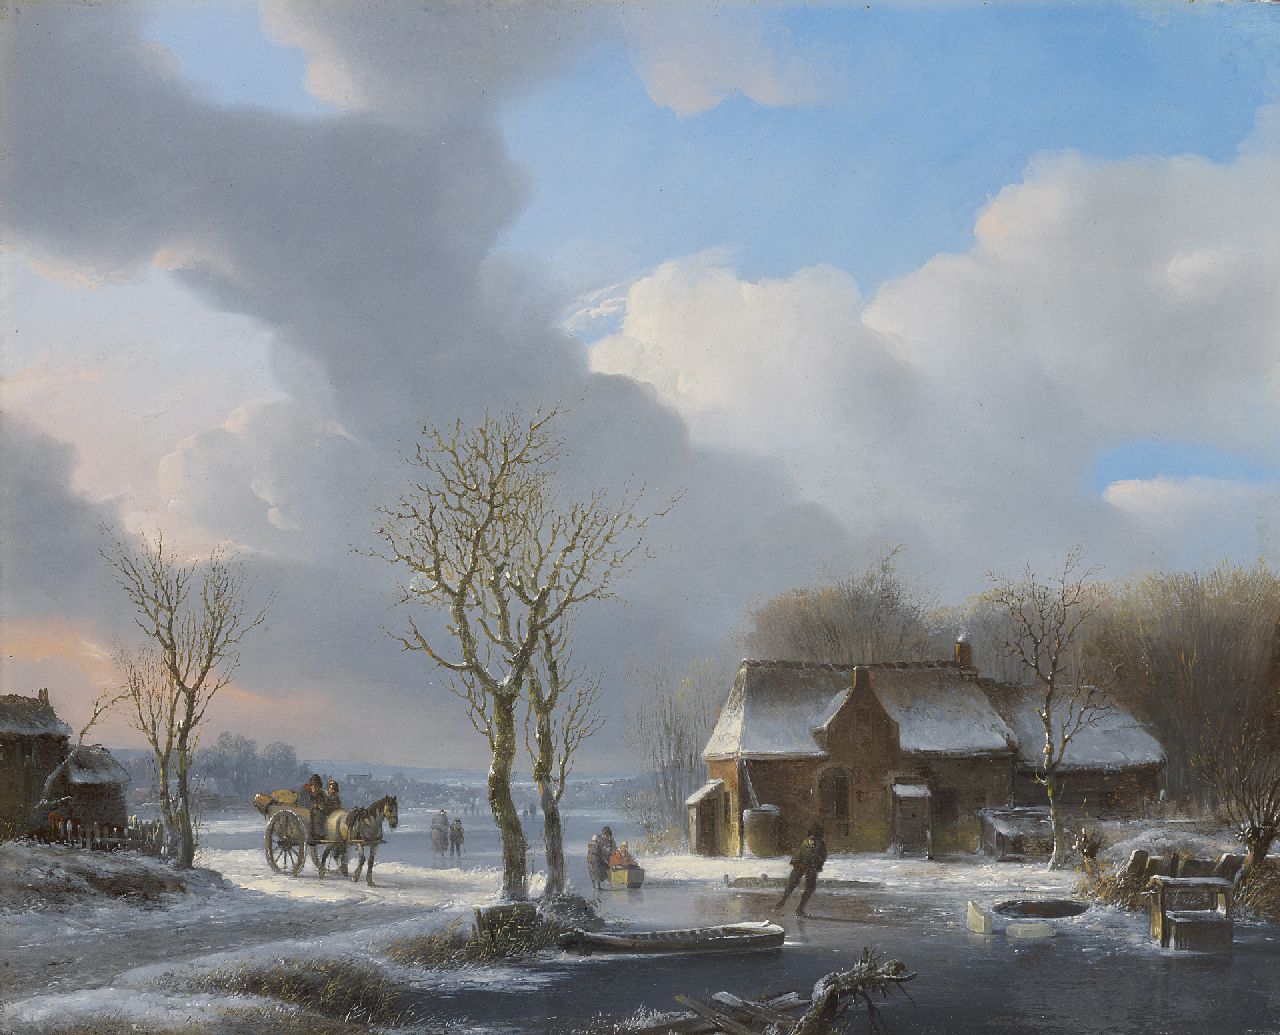 Stok J. van der | Jacobus van der Stok, Een koude winterdag, olieverf op paneel 35,1 x 43,3 cm